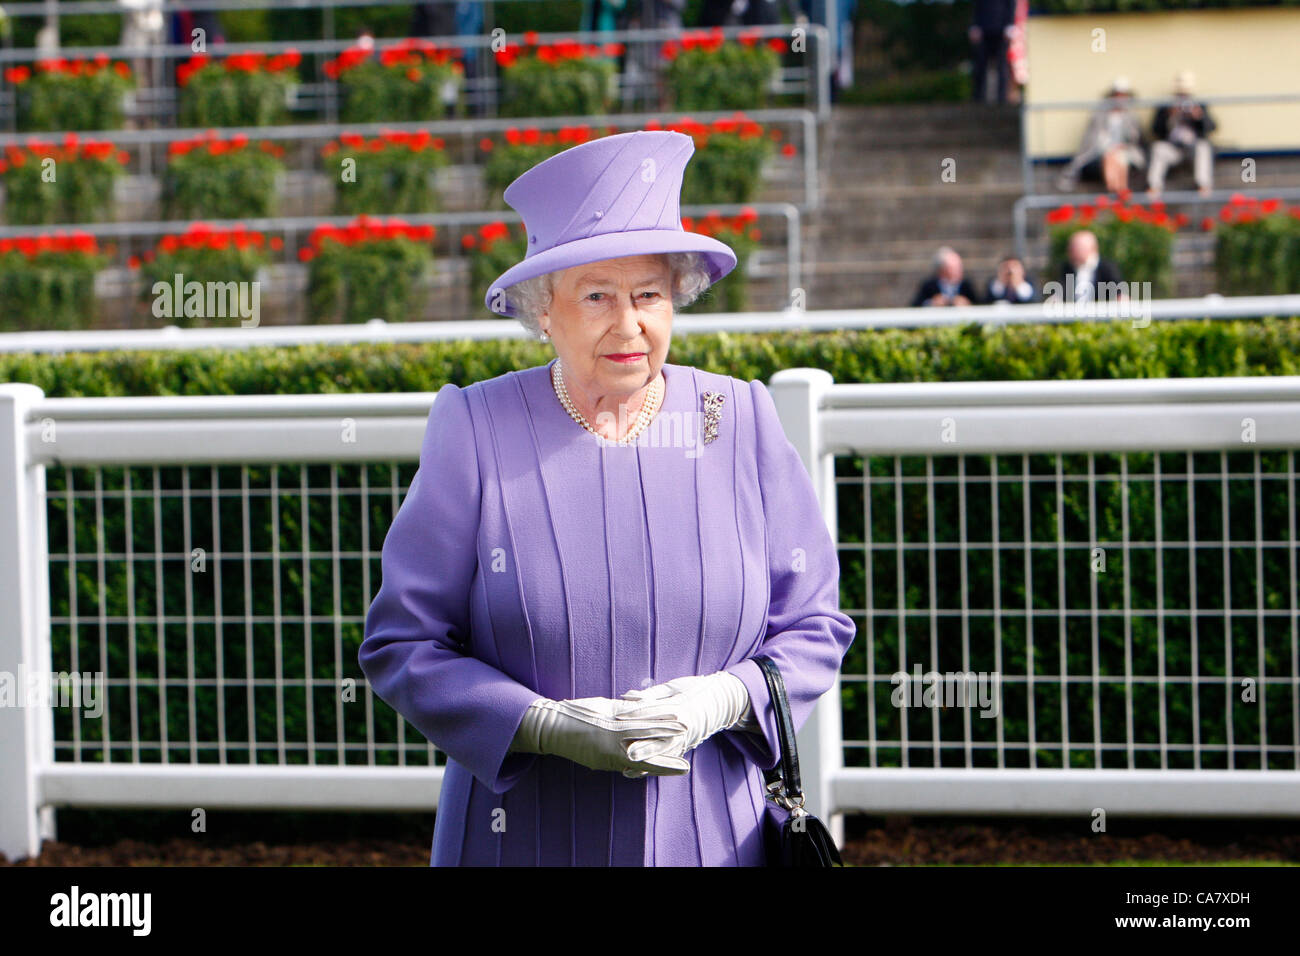 22.06.12 Ascot, Windsor, ENGLAND: Königin Elizabeth II. während der Königin Vase Rennen beim Royal Ascot Festival auf dem Ascot Racecourse am 22. Juni 2012 in Ascot, England. Das Queens Pferd gewann das Rennen. Stockfoto